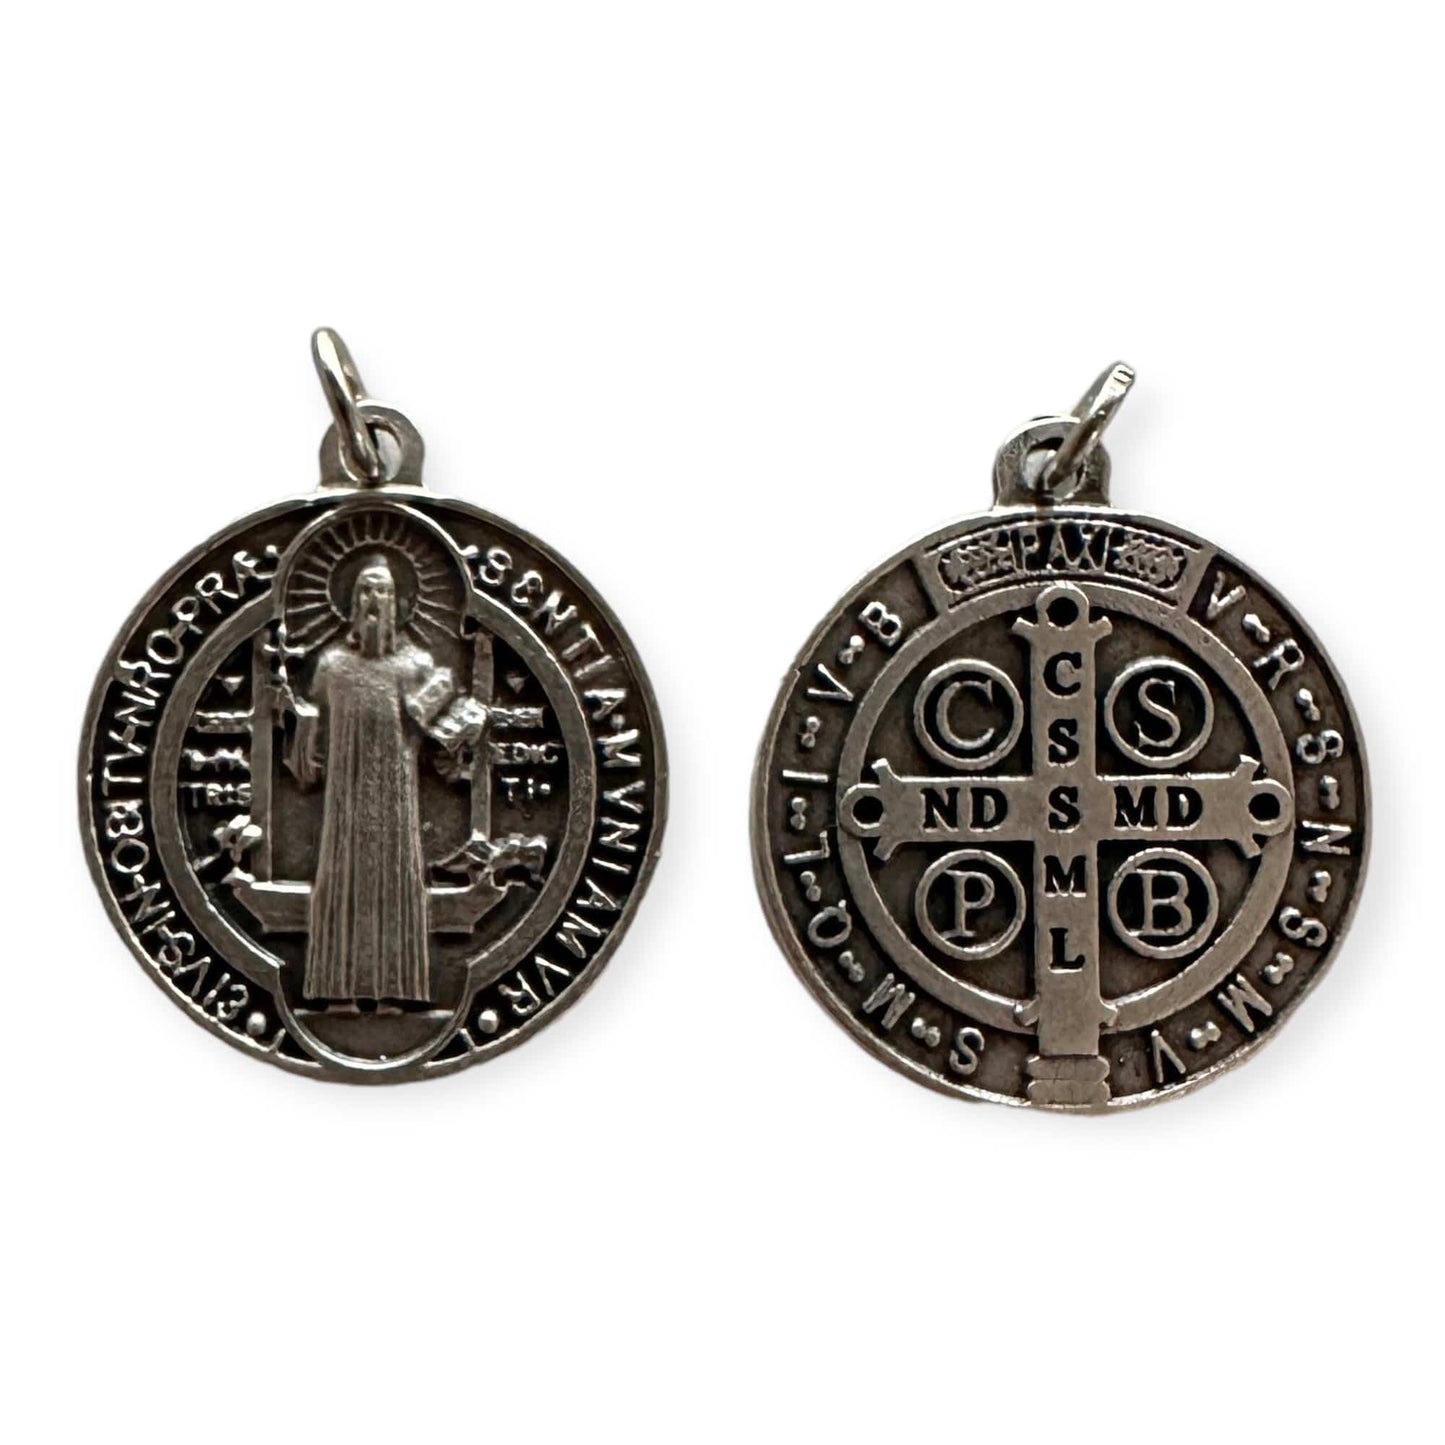 Catholically St Benedict Medal St. Benedict Enamel 1" - Medal Catholic Exorcism - Blessed